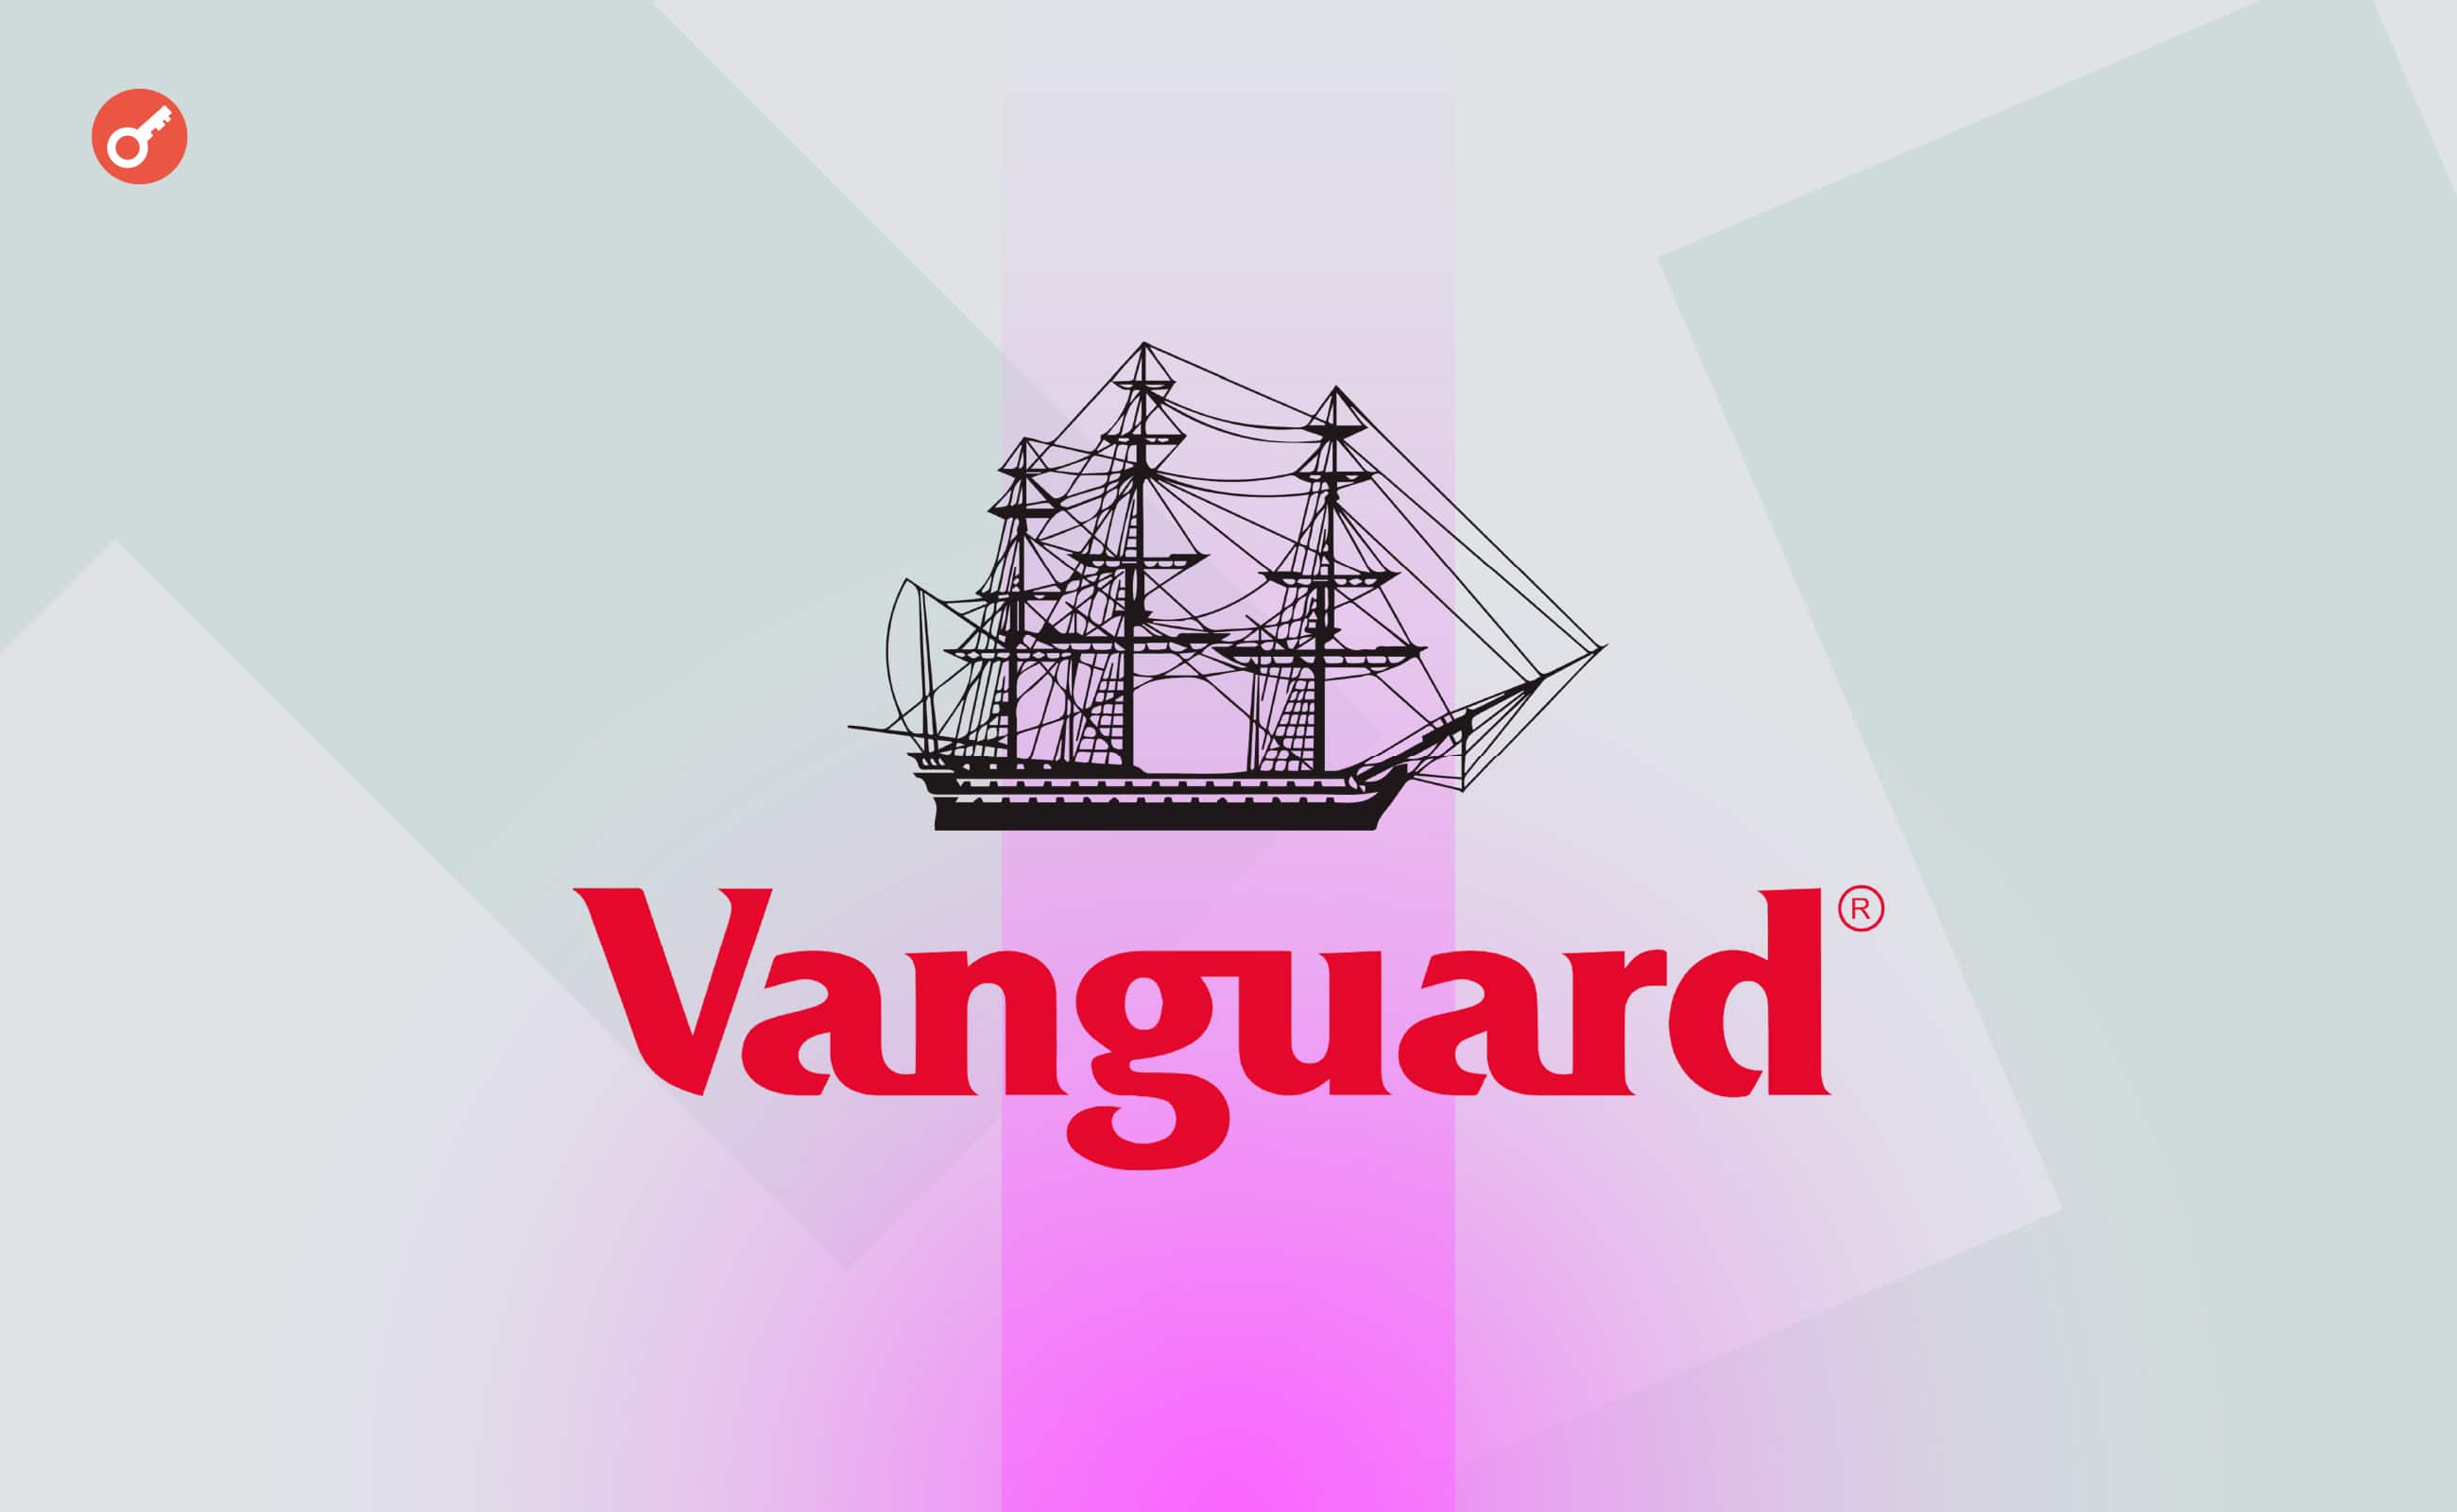 CEO Vanguard розкритикував біткоїн і відкинув ідею щодо лістингу криптовалютних ETF. Головний колаж новини.